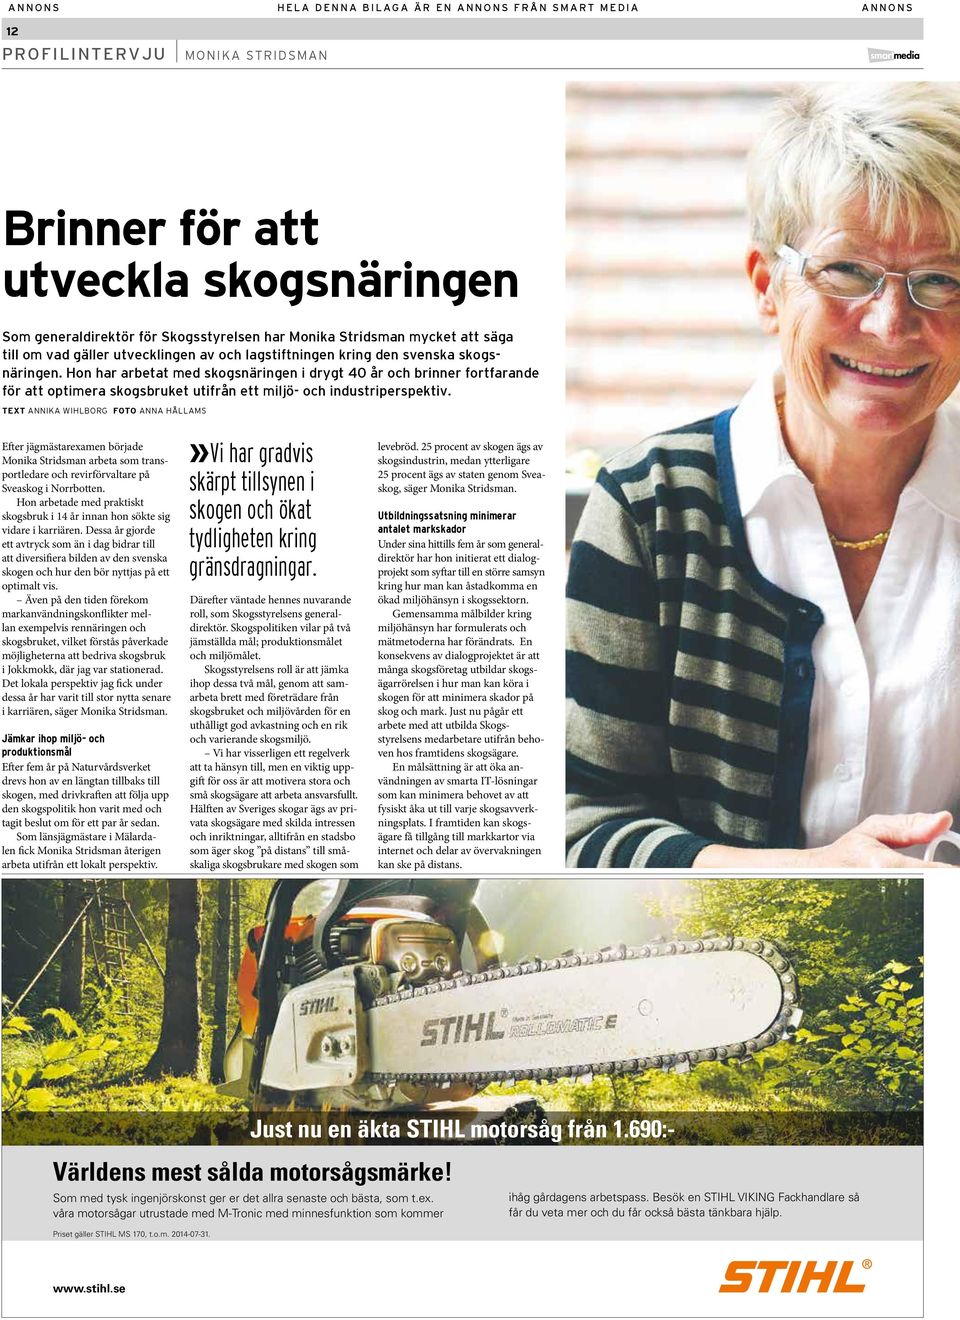 TEXT ANNIKA WIHLBORG FOTO ANNA HÅLLAMS Efter jägmästarexamen började Monika Stridsman arbeta som transportledare och revirförvaltare på Sveaskog i Norrbotten.